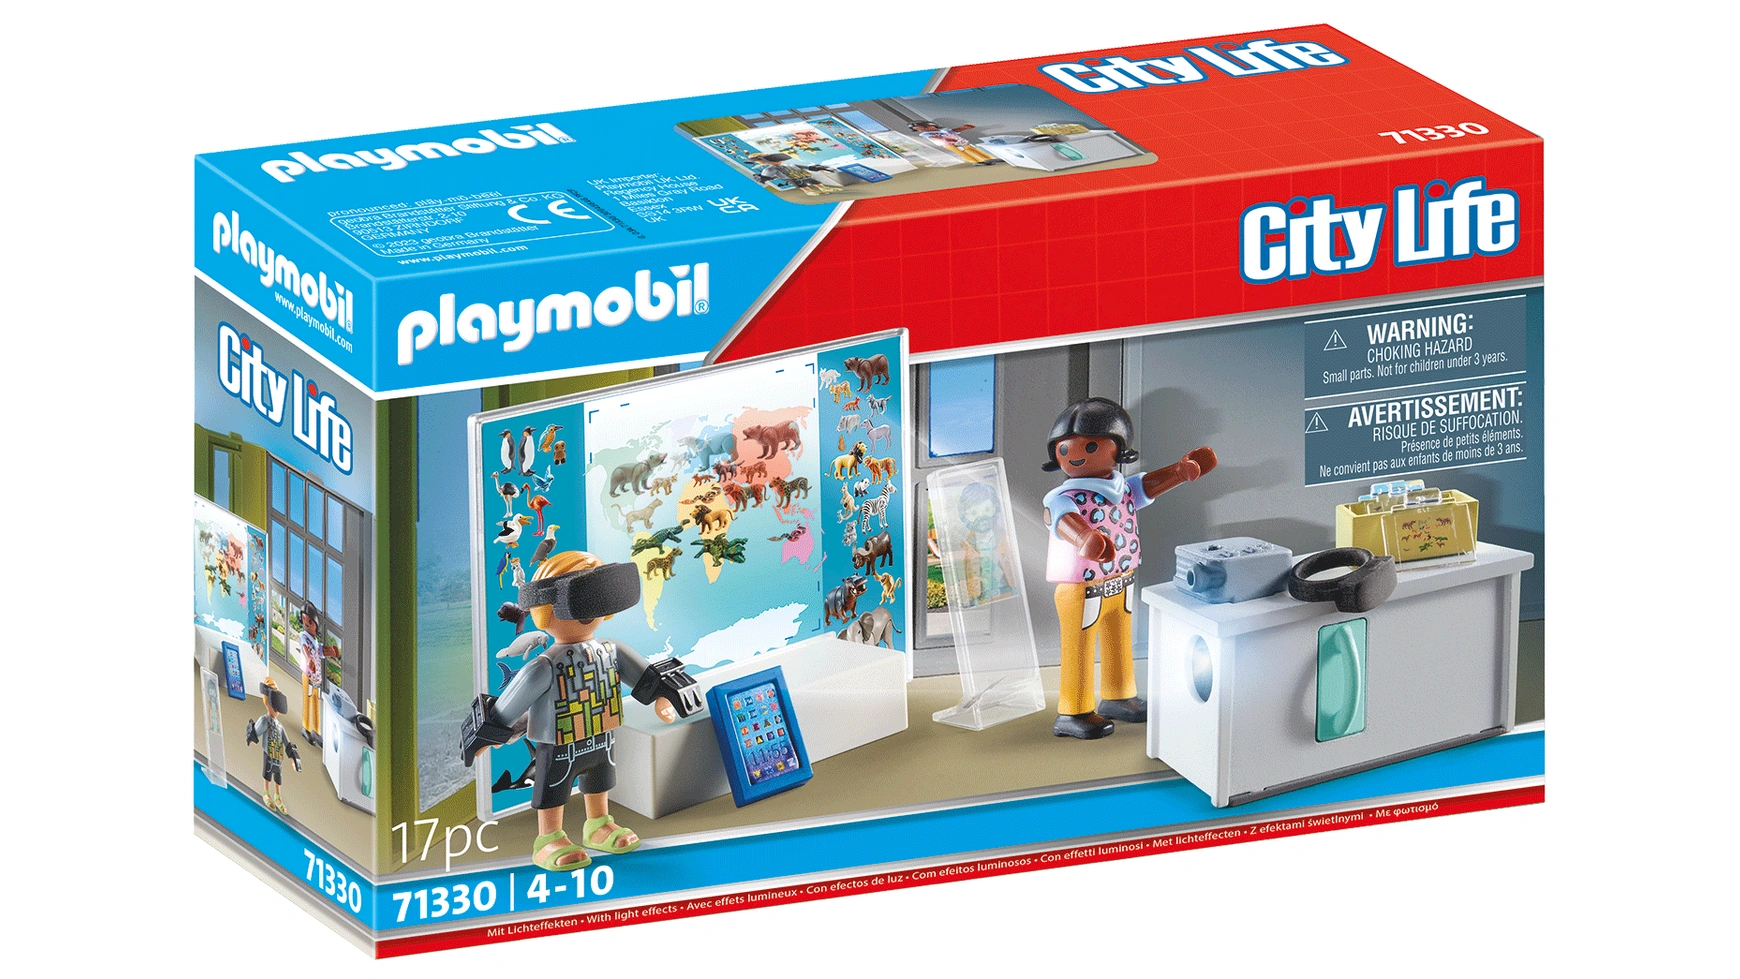 Городская жизнь виртуальный класс Playmobil бизиборд городская жизнь 4250831